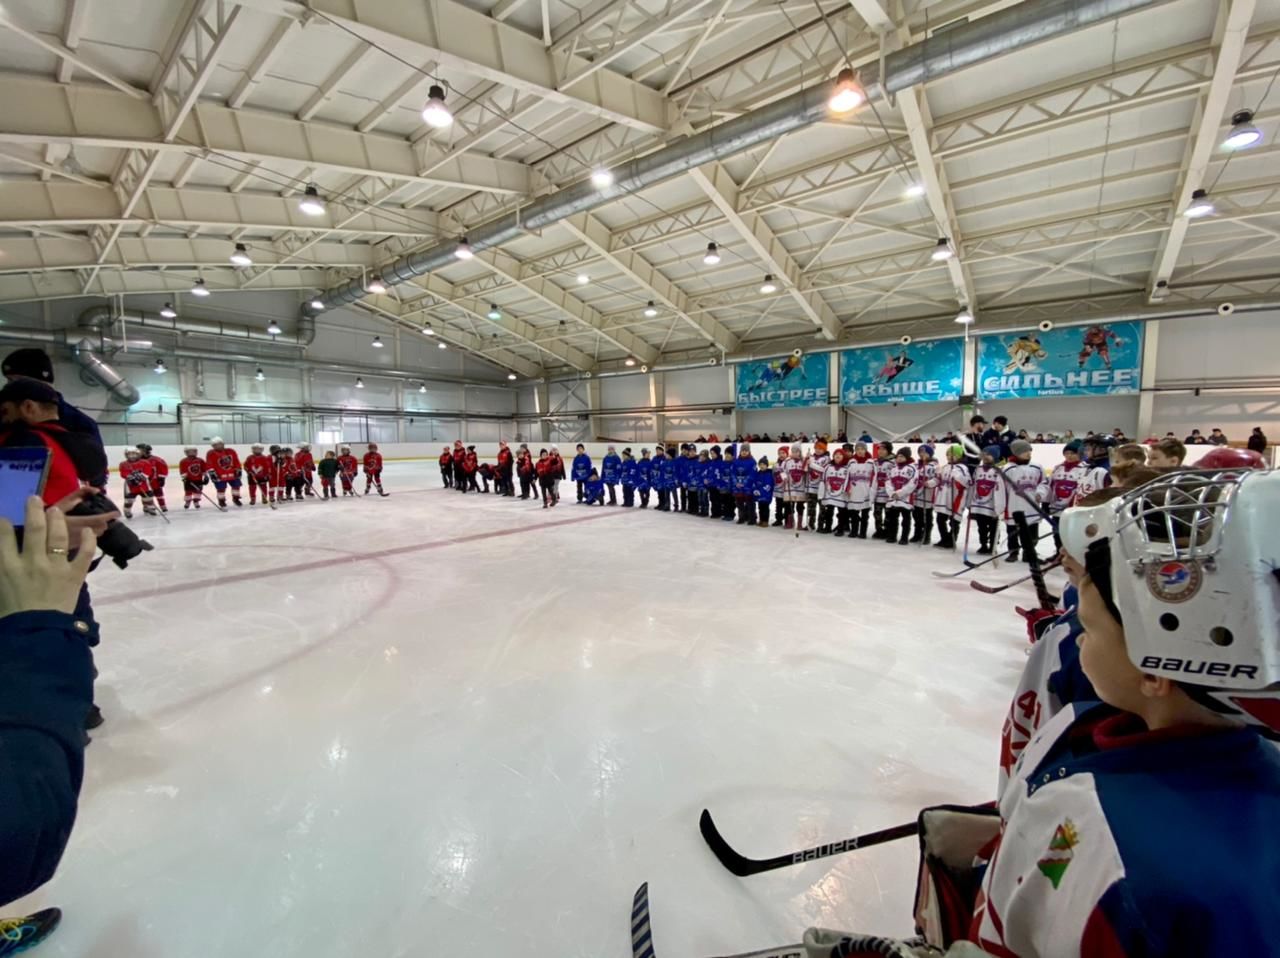 Менделеевские спортсмены стали третьими в Весеннем турнире по хоккею